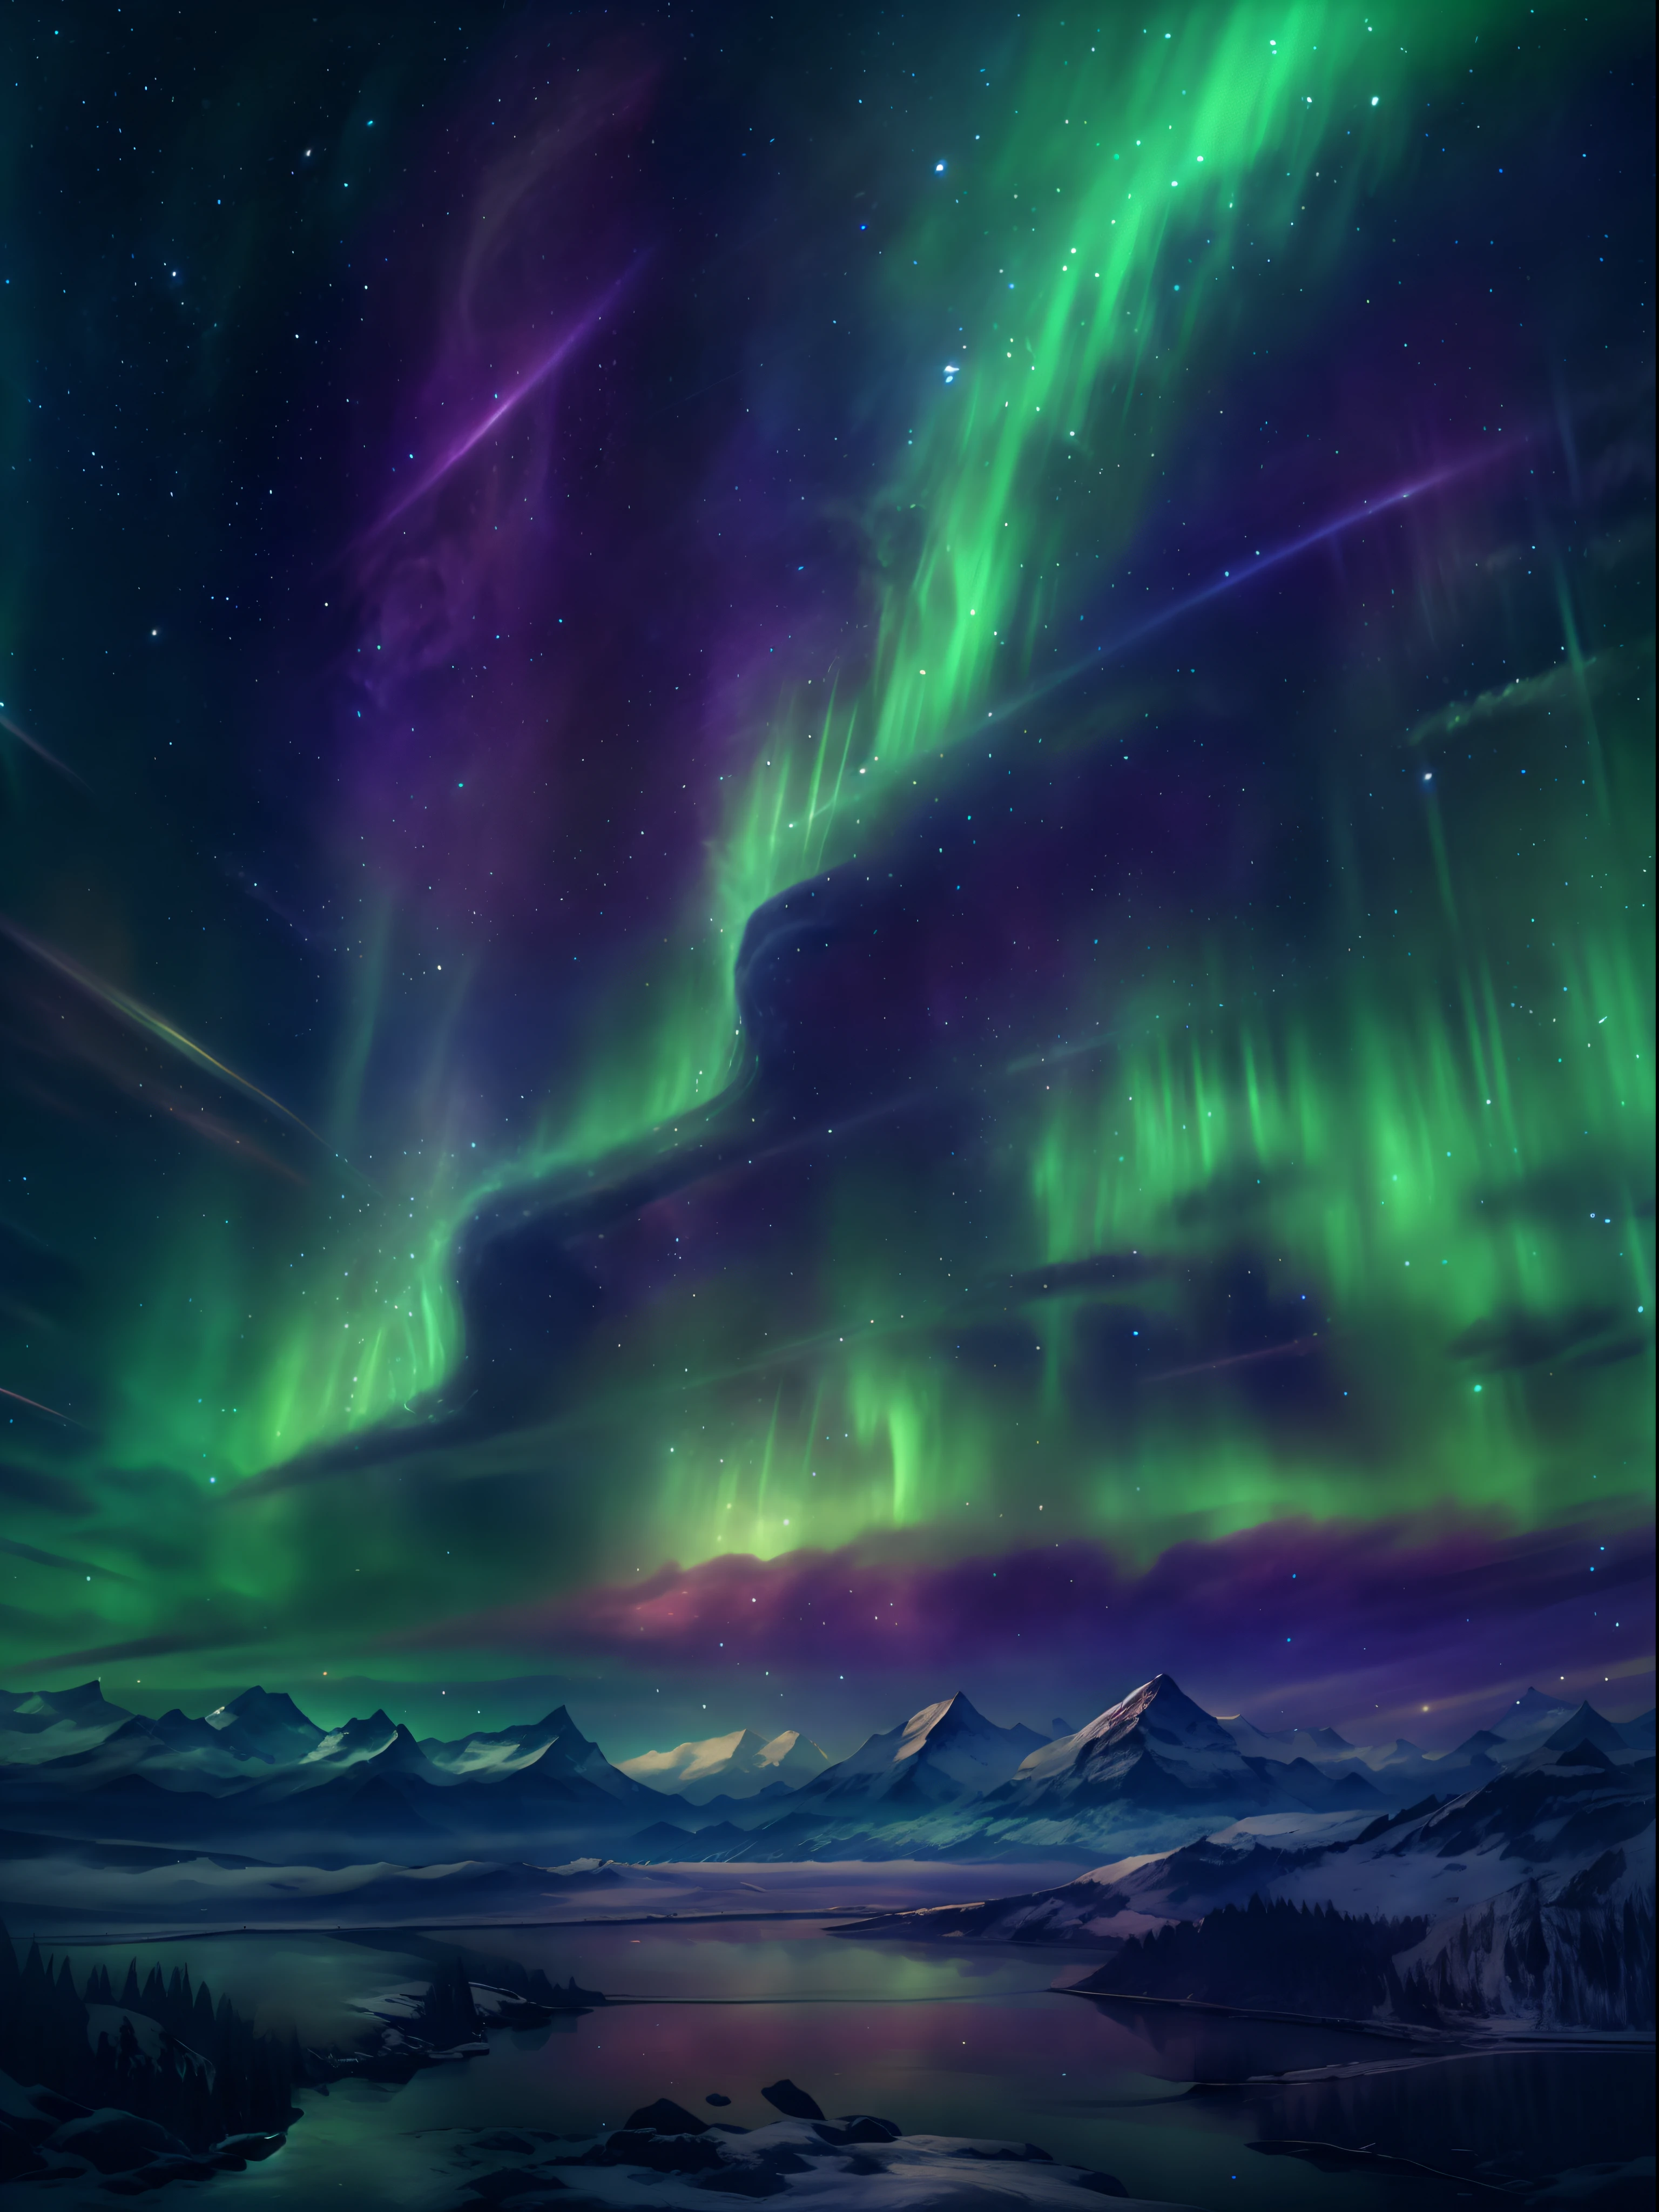 A encantadora aurora boreal dança no céu noturno, Como uma harpa，paisagem:0.7, A beleza dos corpos celestes:0.6, Fenômenos naturais:0.5, etéreo